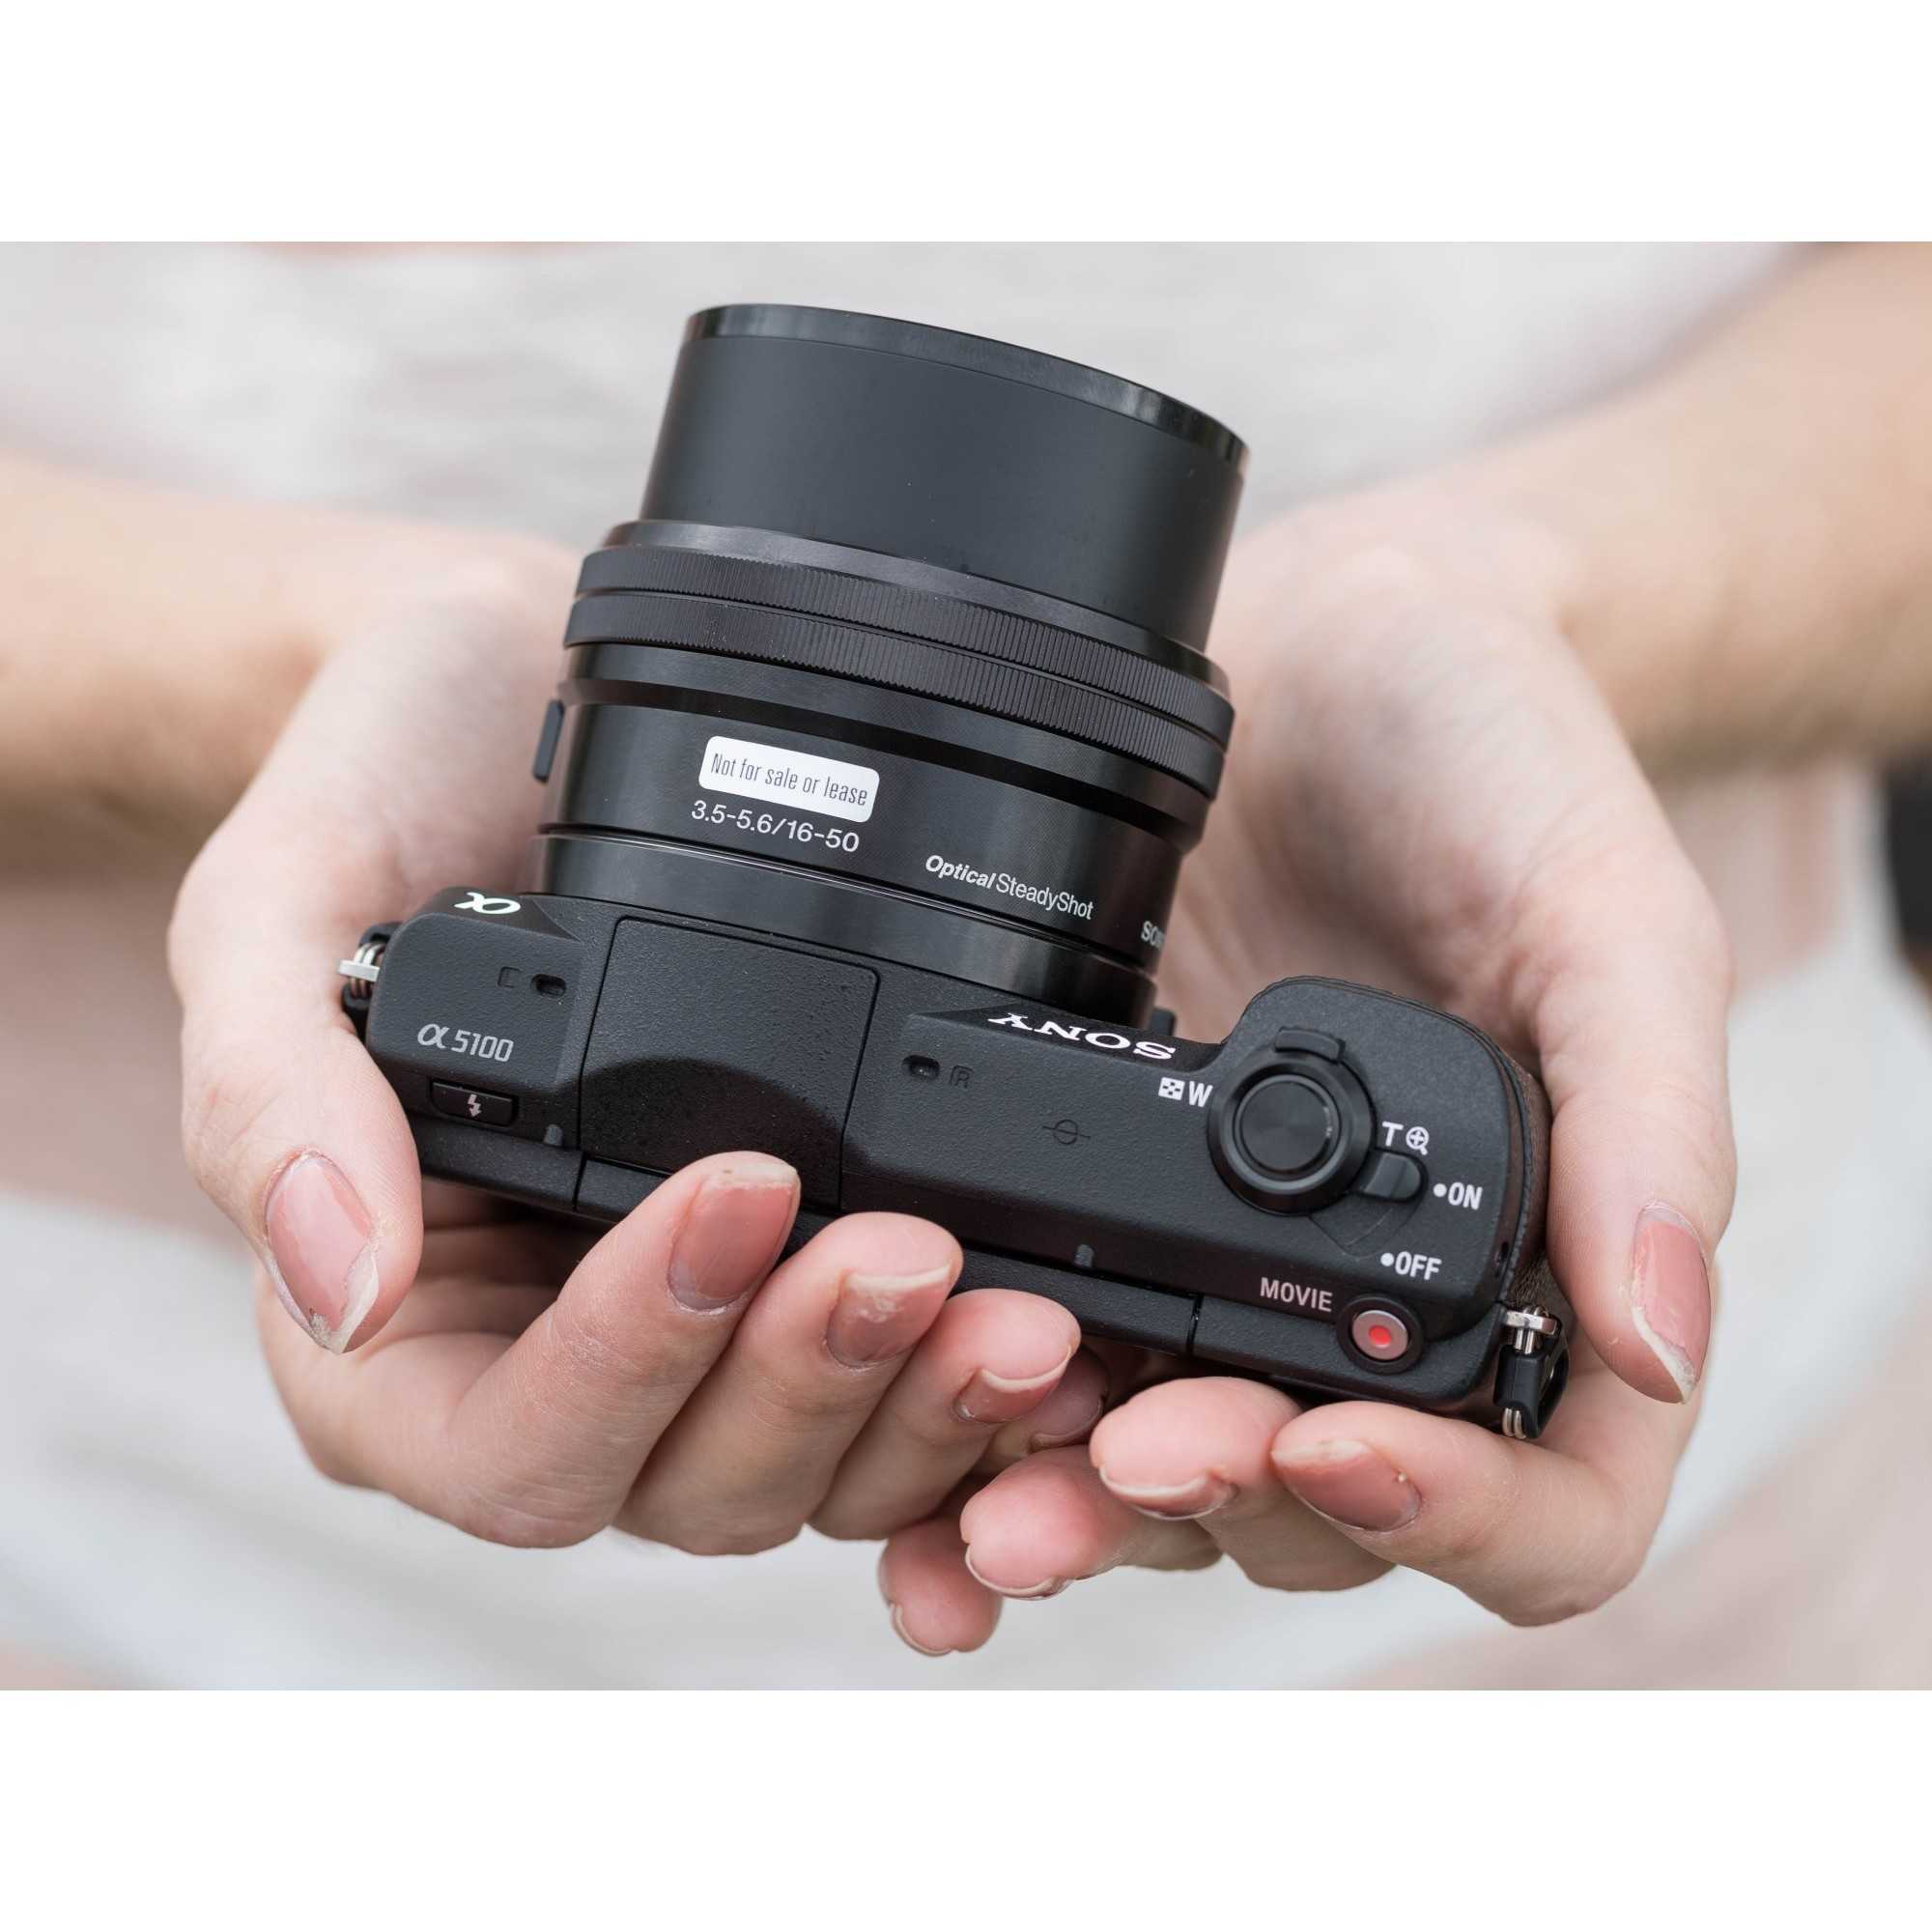 Sony alpha a5100 kit (черный) - купить , скидки, цена, отзывы, обзор, характеристики - фотоаппараты цифровые